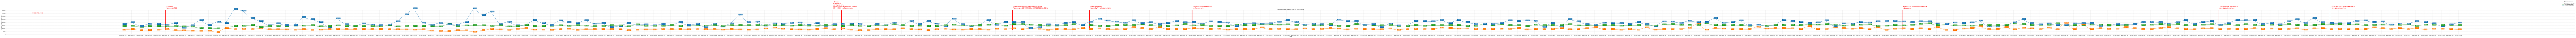 Гистограмма, показывающая среднюю стоимость квадратного метра недвижимости в Крыму по дням c 2023-06-01 по 2024-02-29